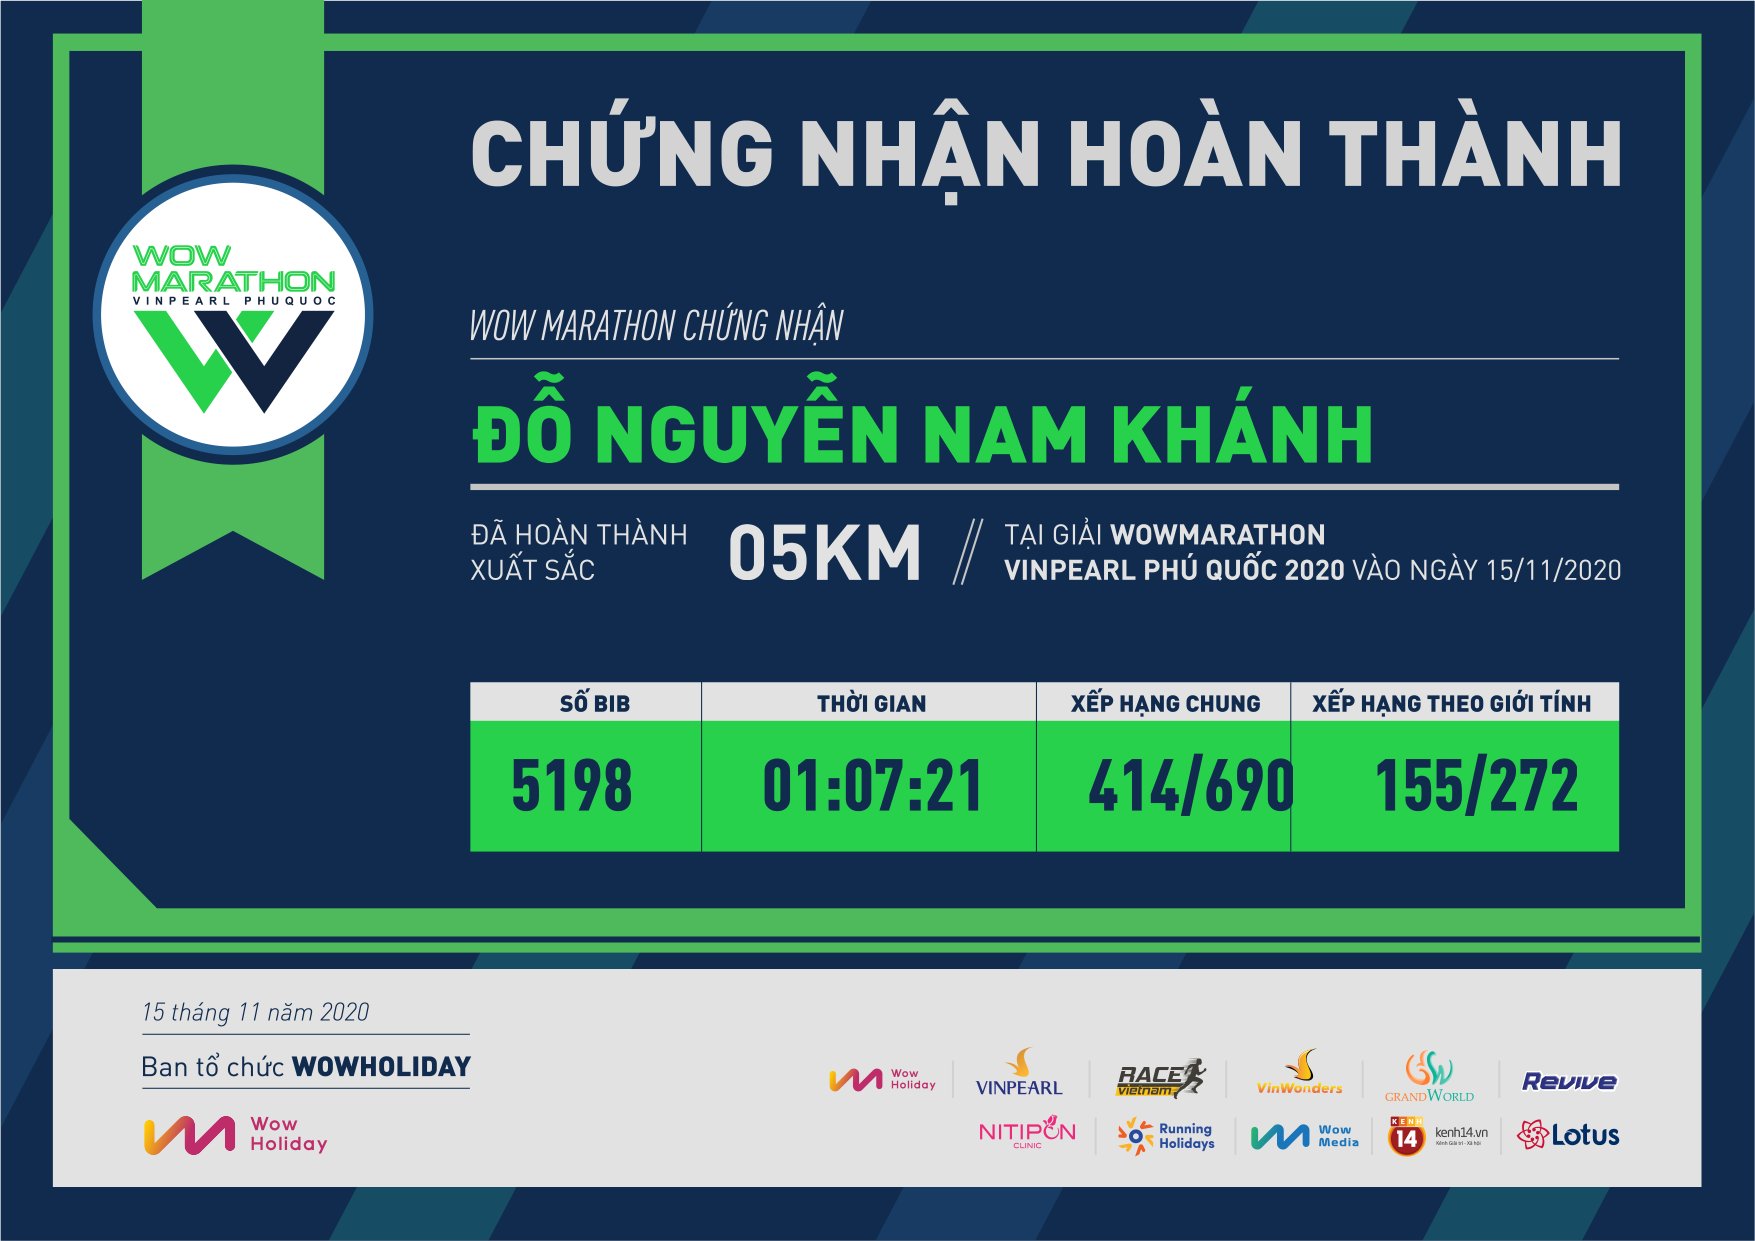 5198 - Đỗ Nguyễn Nam Khánh